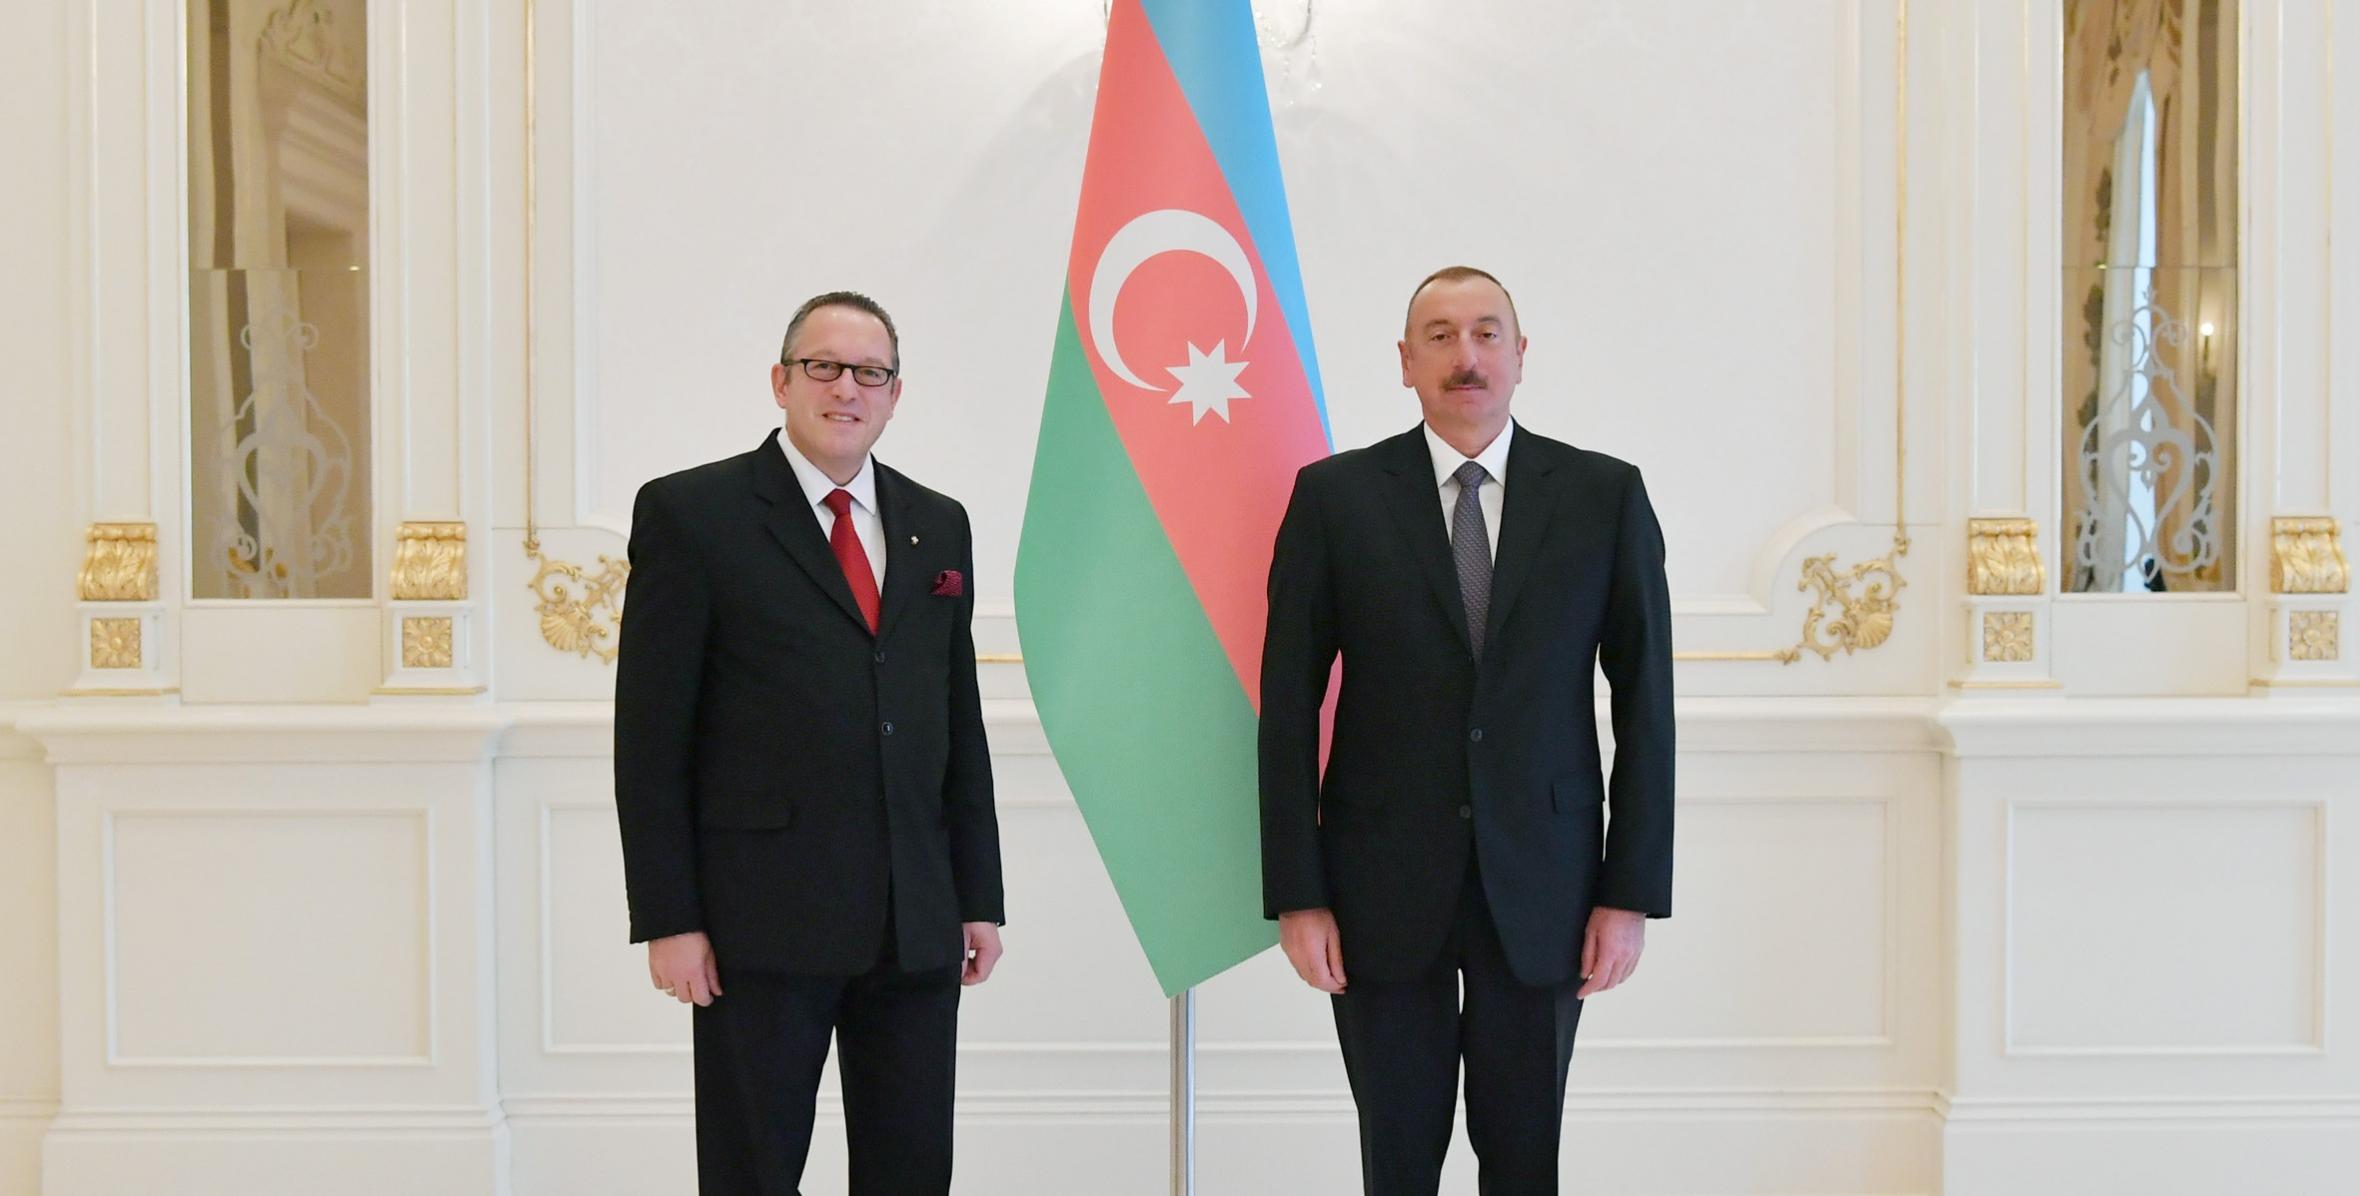 Ильхам Алиев принял верительные грамоты новоназначенного посла Австрии в Азербайджане